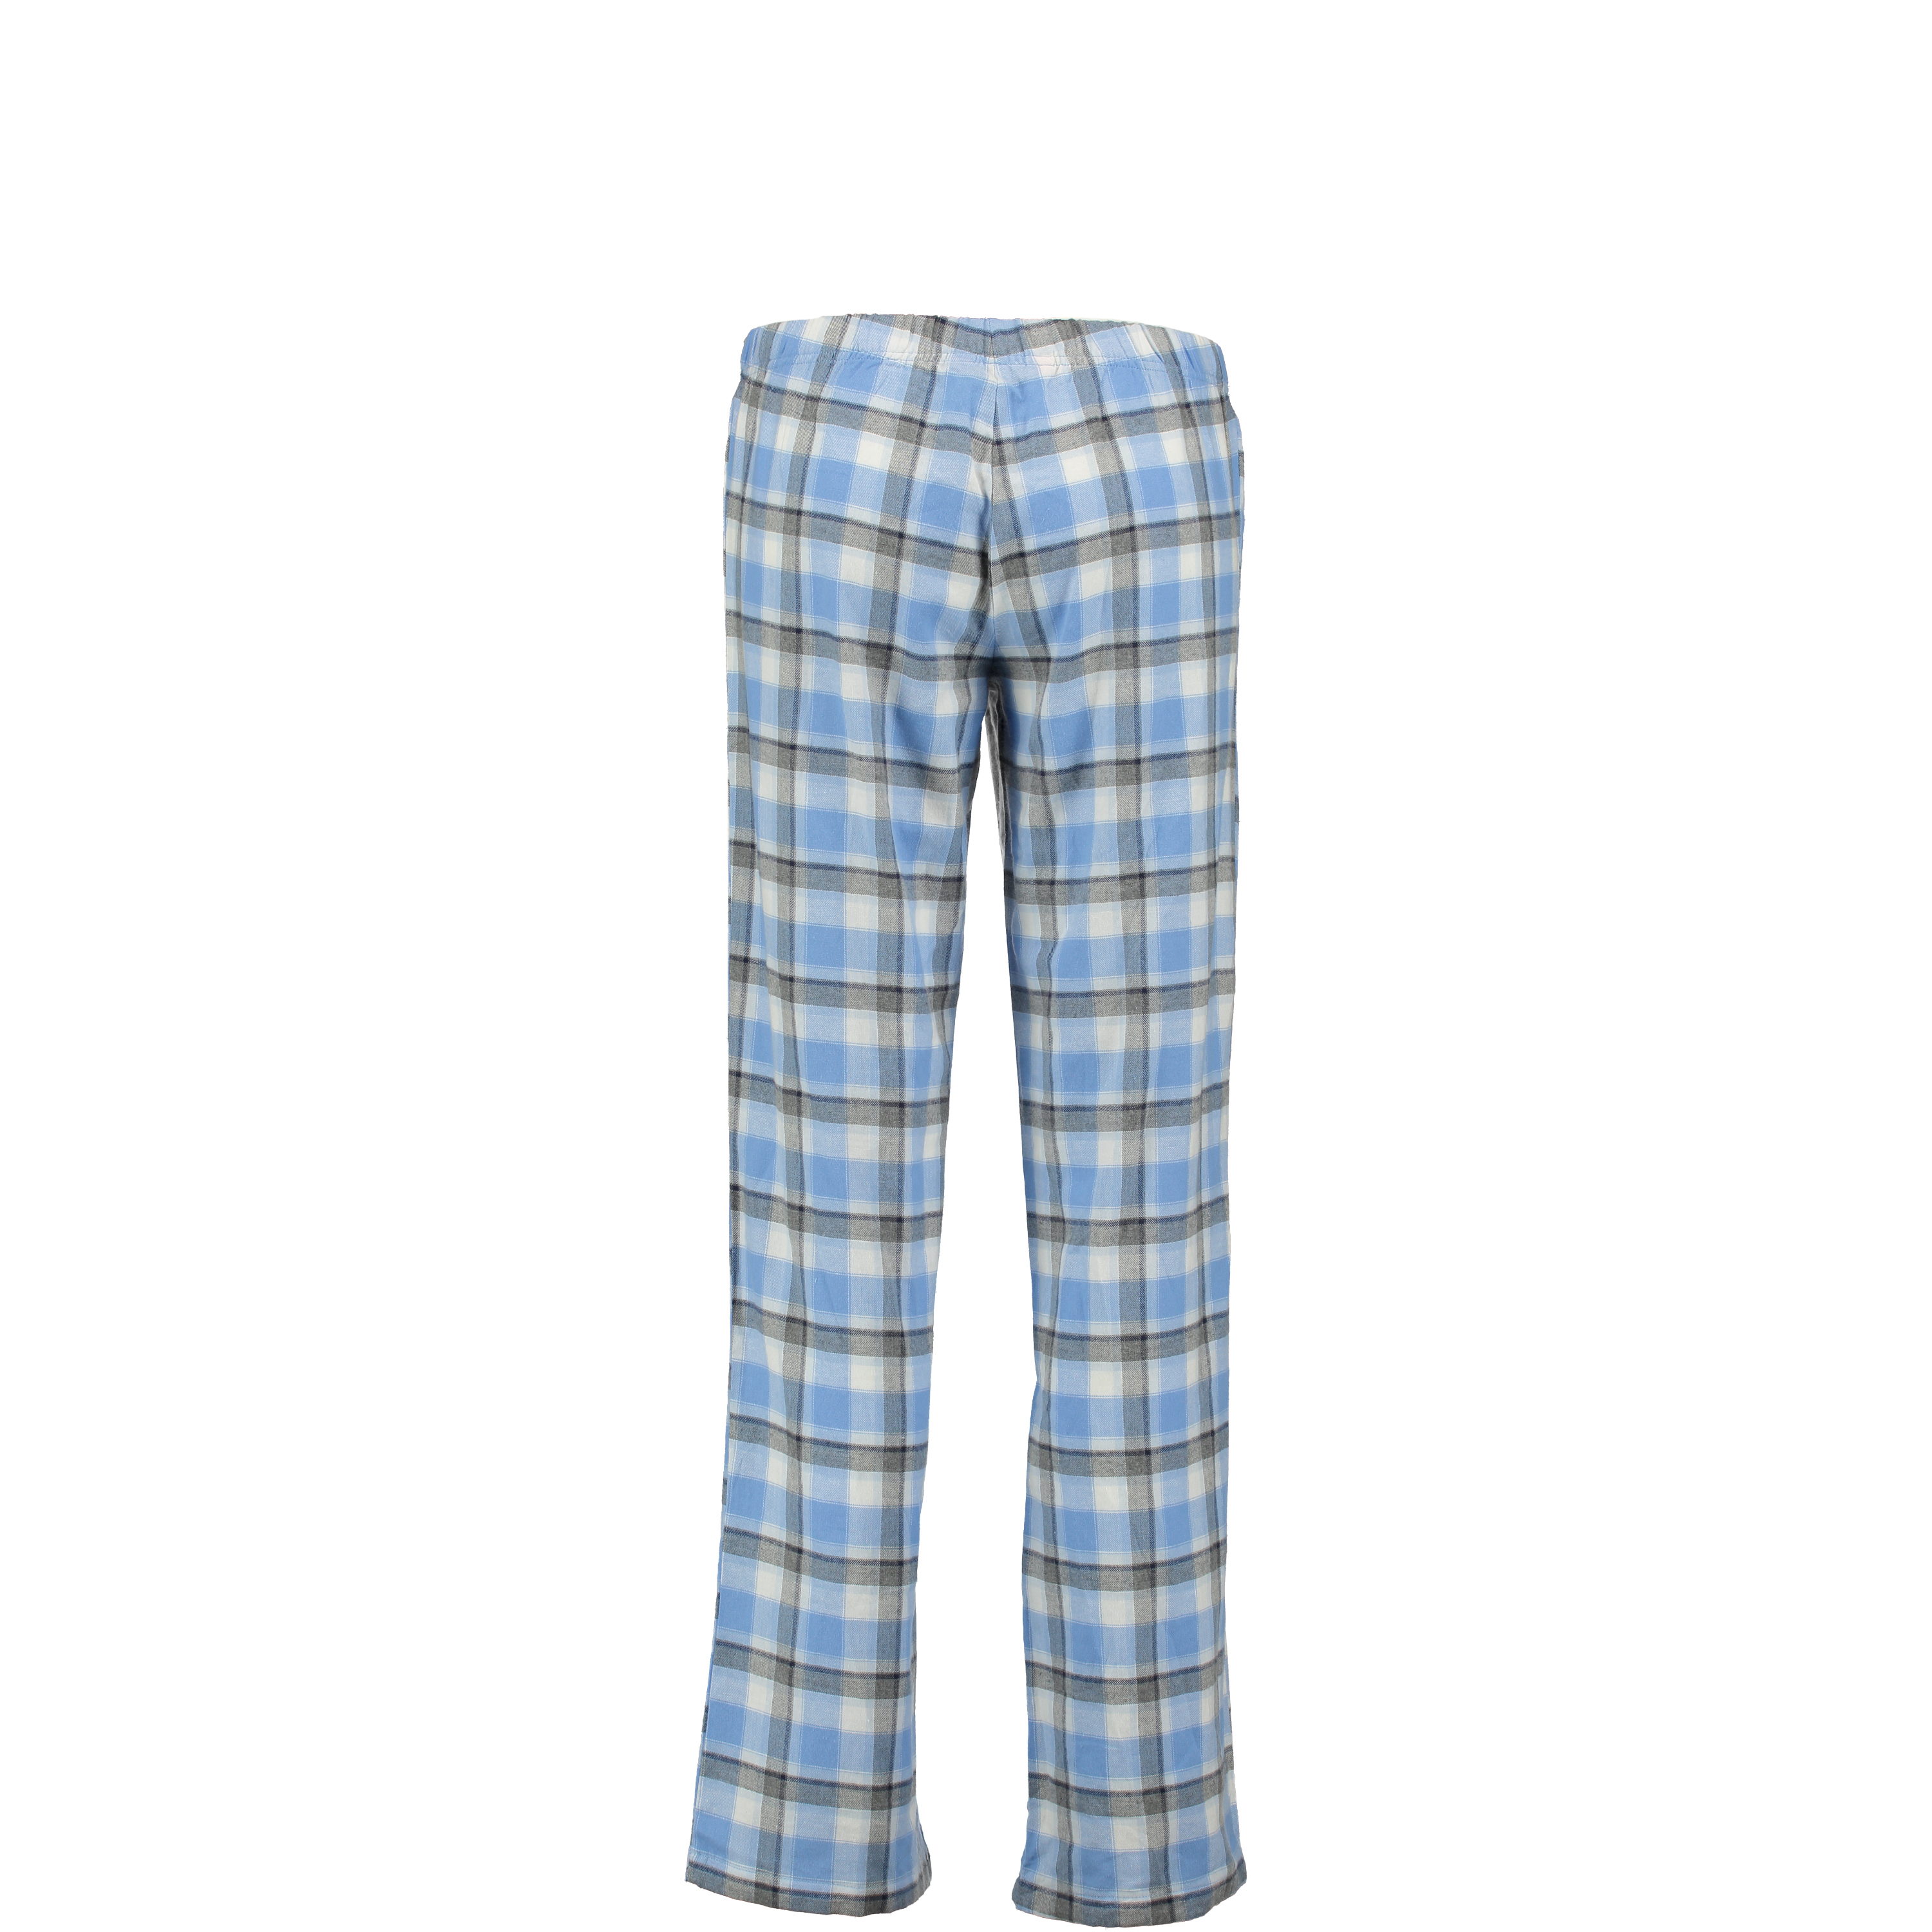 Pyjama pants Papillon butterfly, Bleu, main